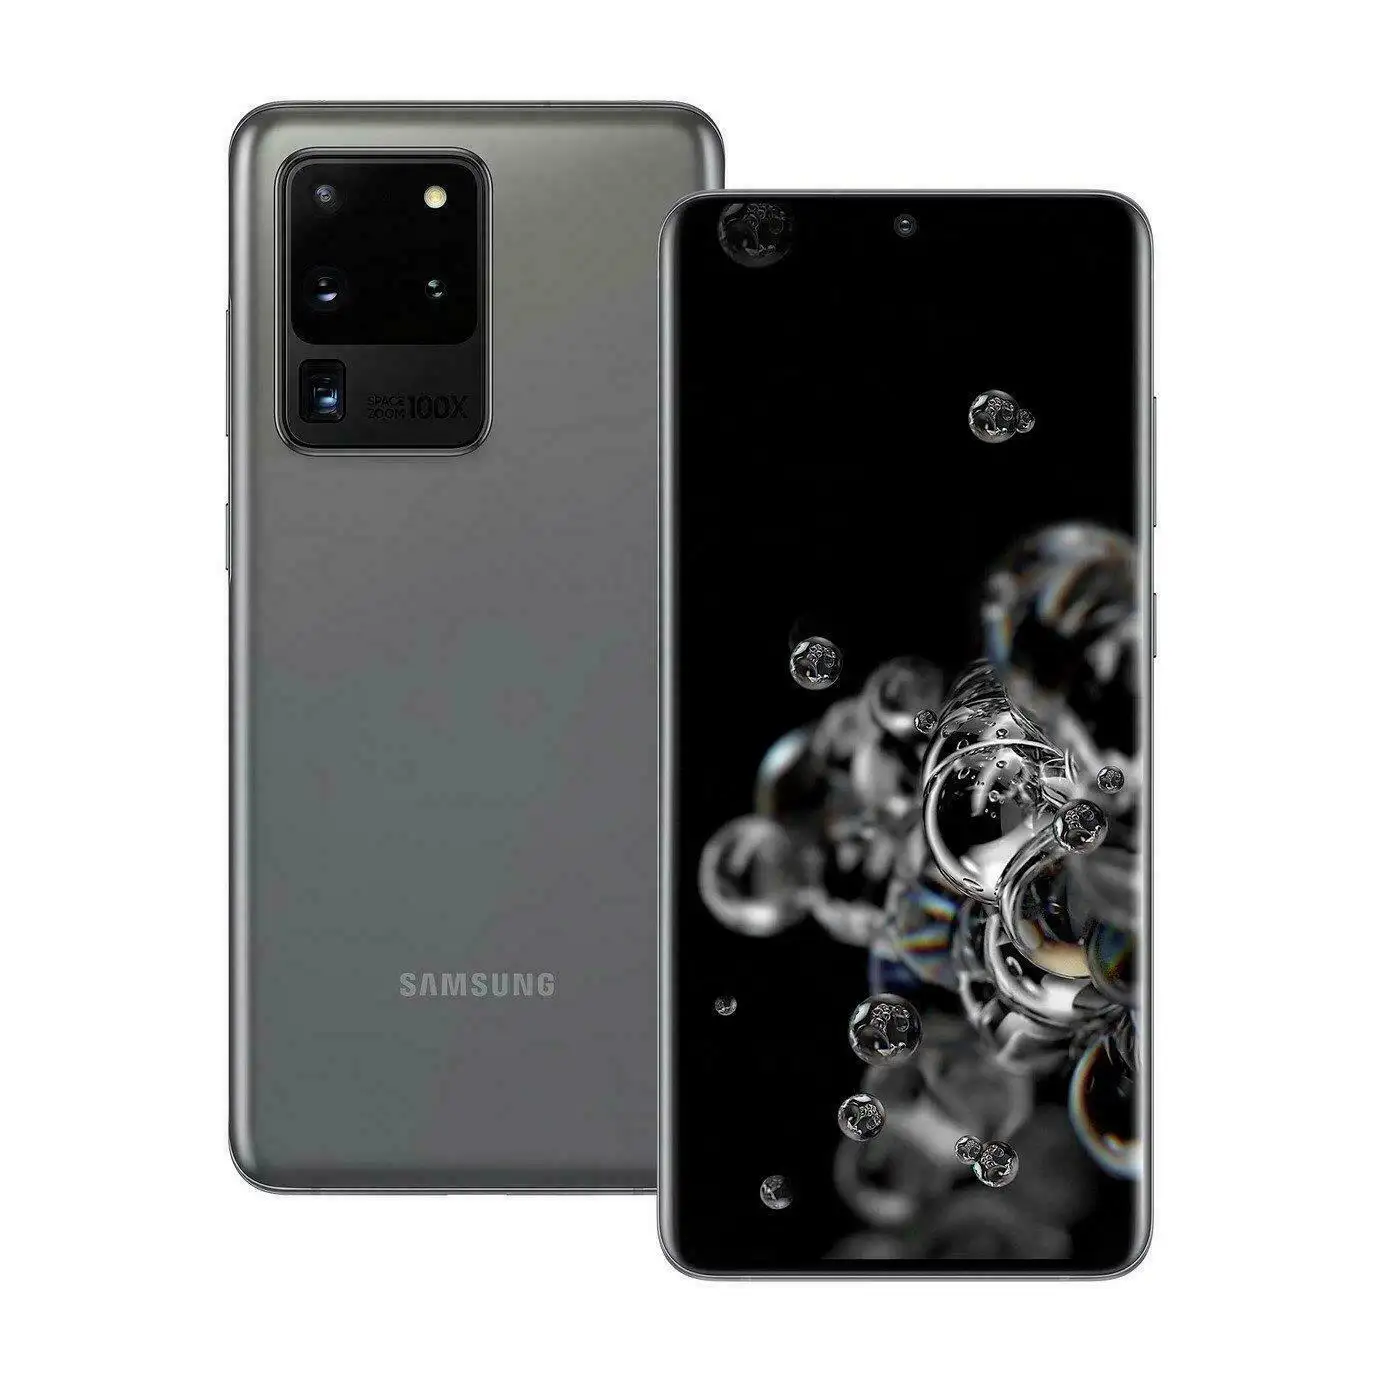 Samsung Galaxy S20อัลตร้า5G ปลดล็อค G988U 256GB โทรศัพท์มือถือ Android หน่วยความจำขนาดใหญ่